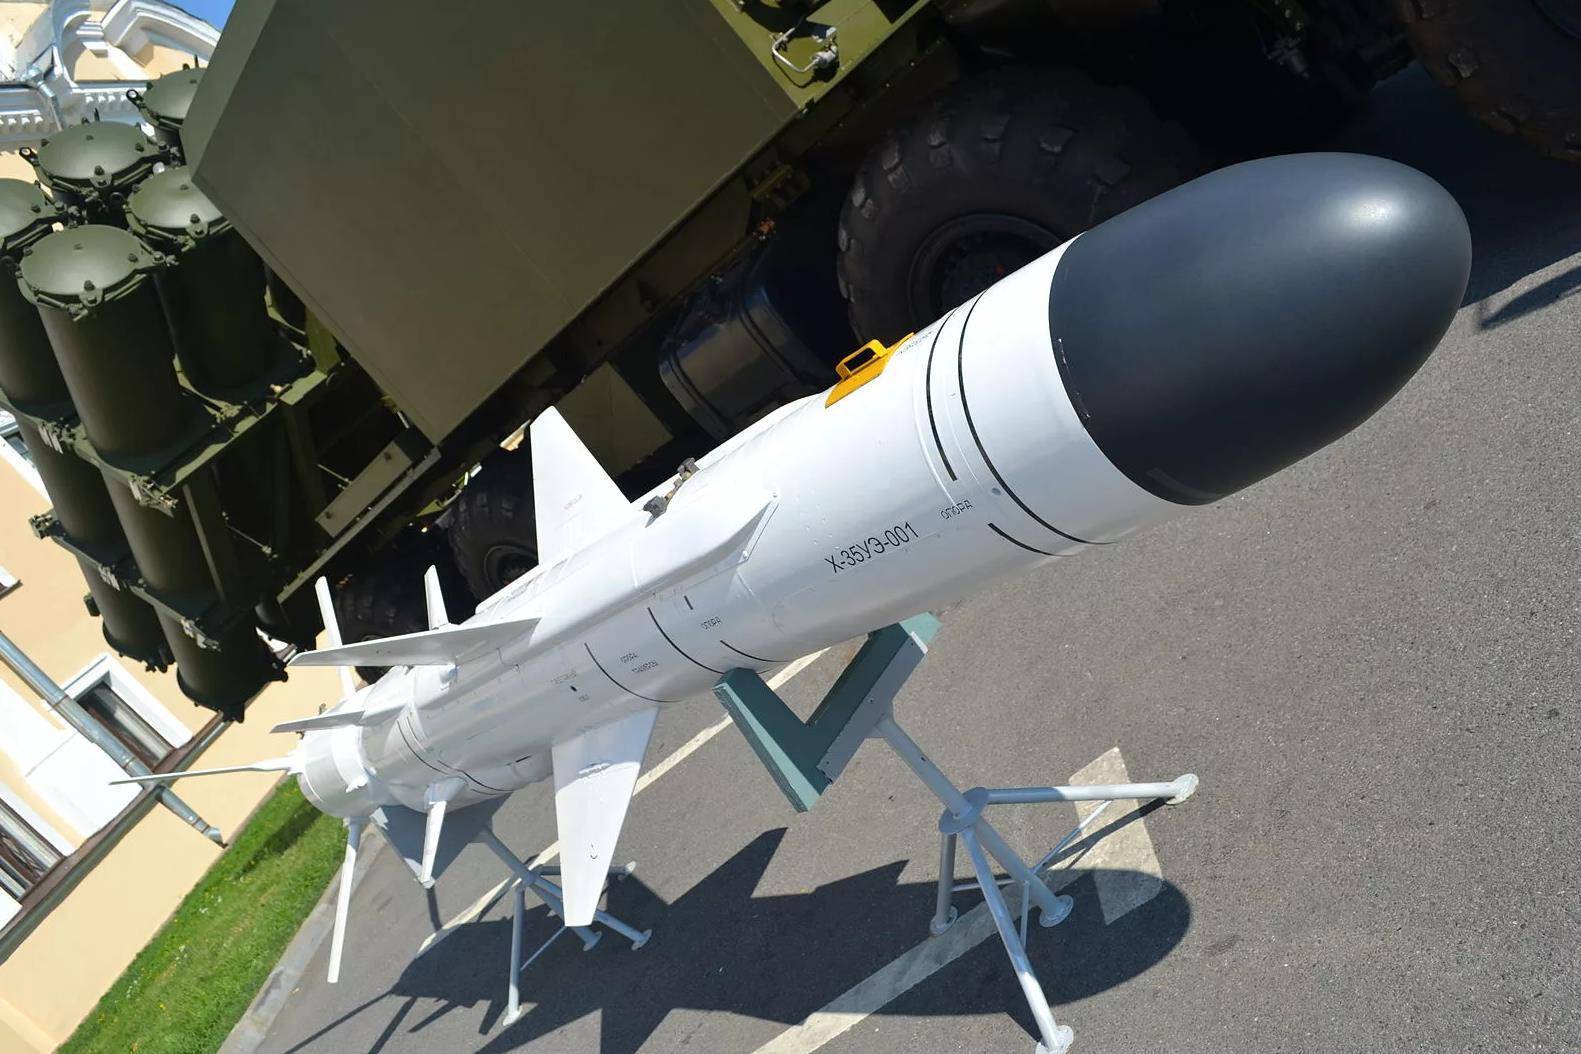 天王星反舰导弹,具有压水花特技,俄海军强大利器之一!